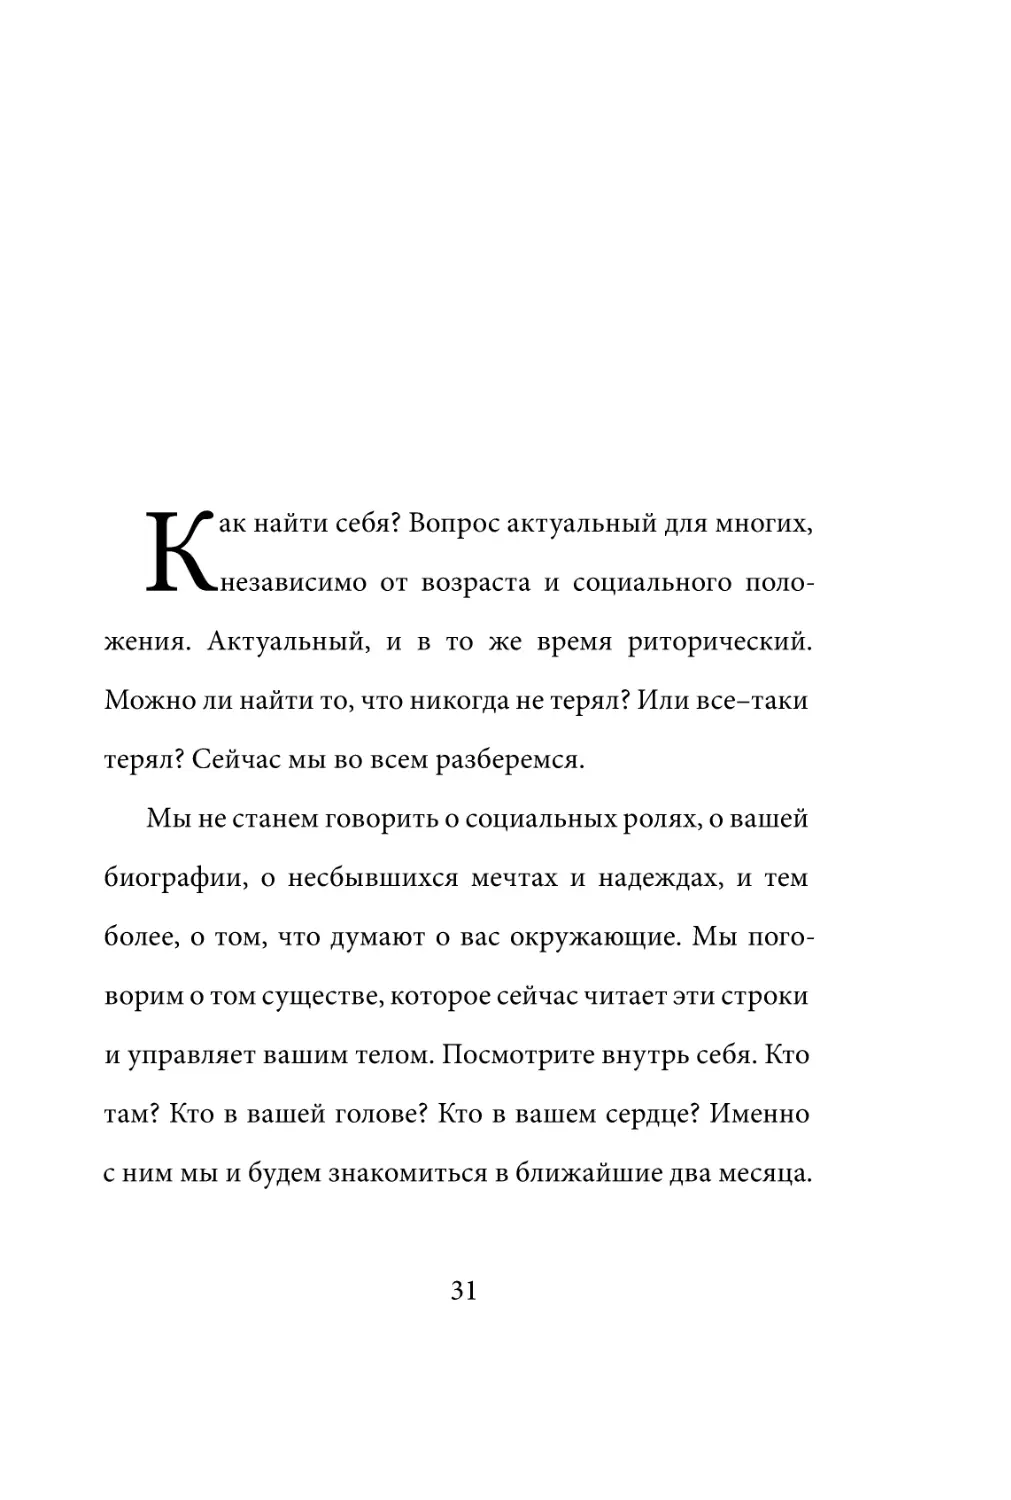 Sergey_Filippov_Dnevnik_samorazvitia_Evolyutsia_Vnutrennego_Sostoyania_31.pdf (p.31)